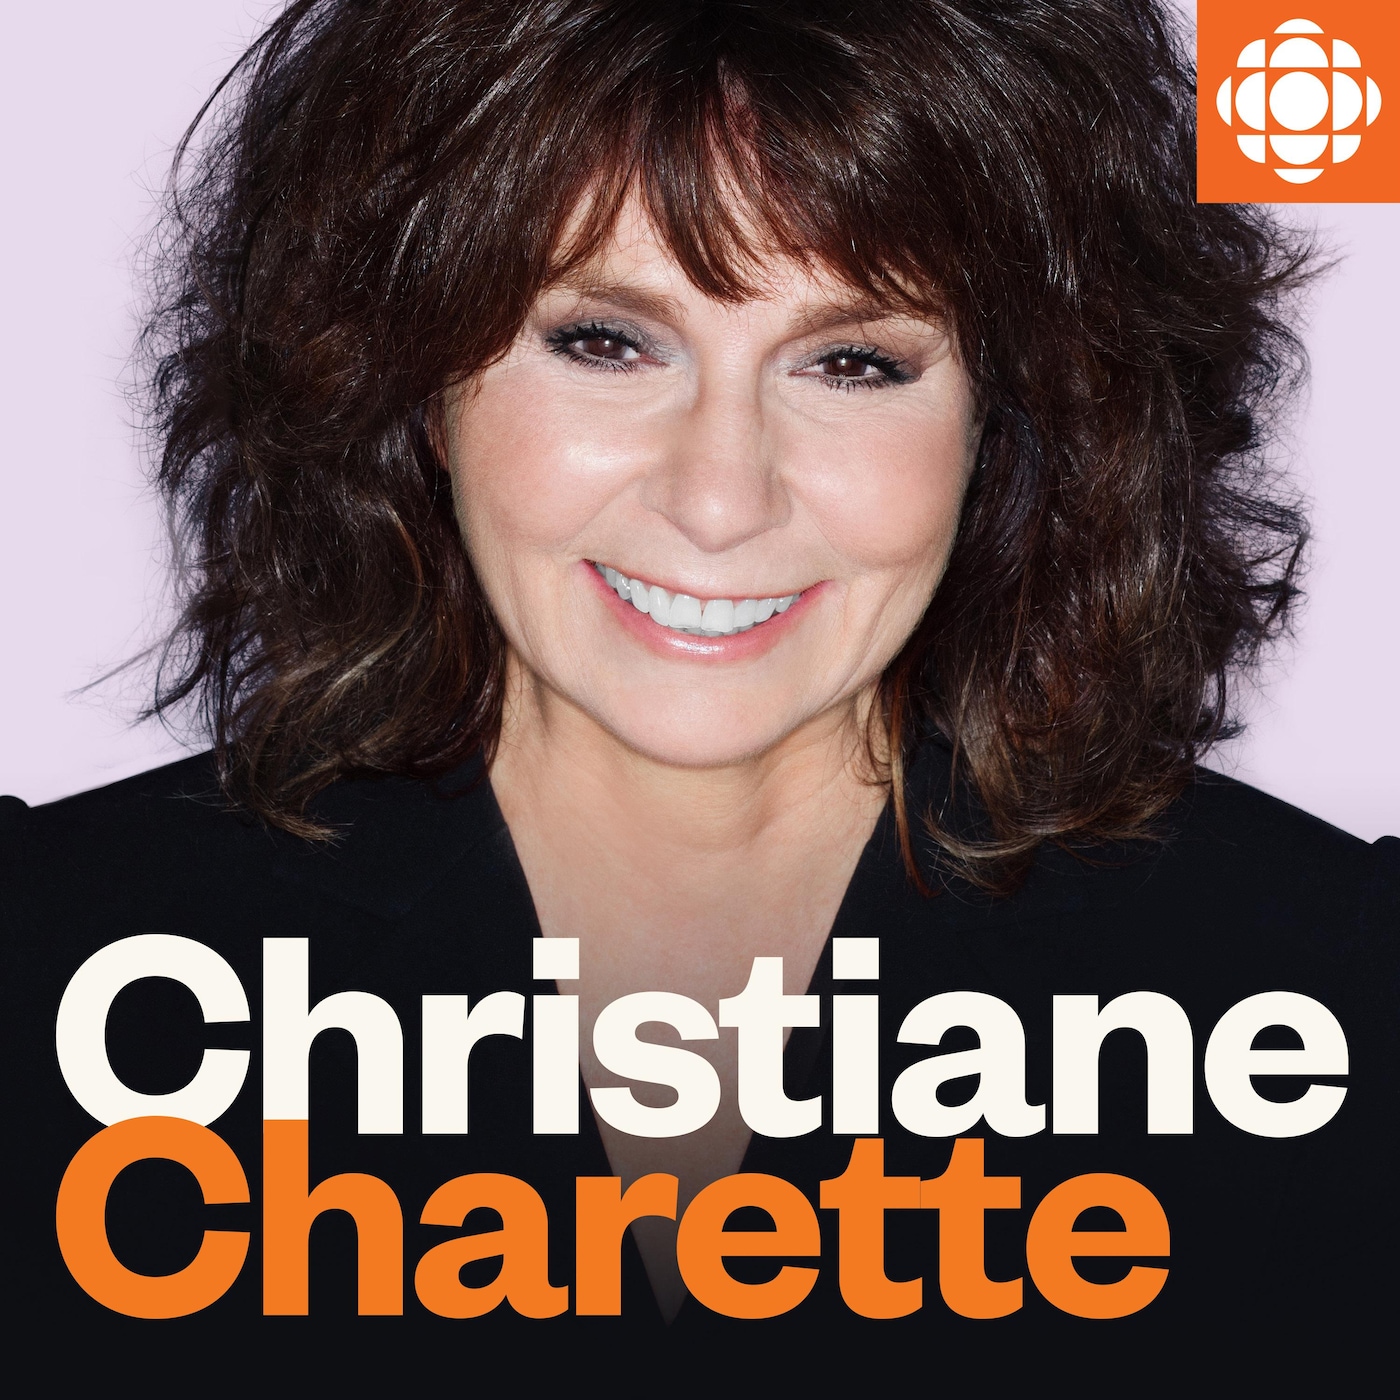 Christiane Charette